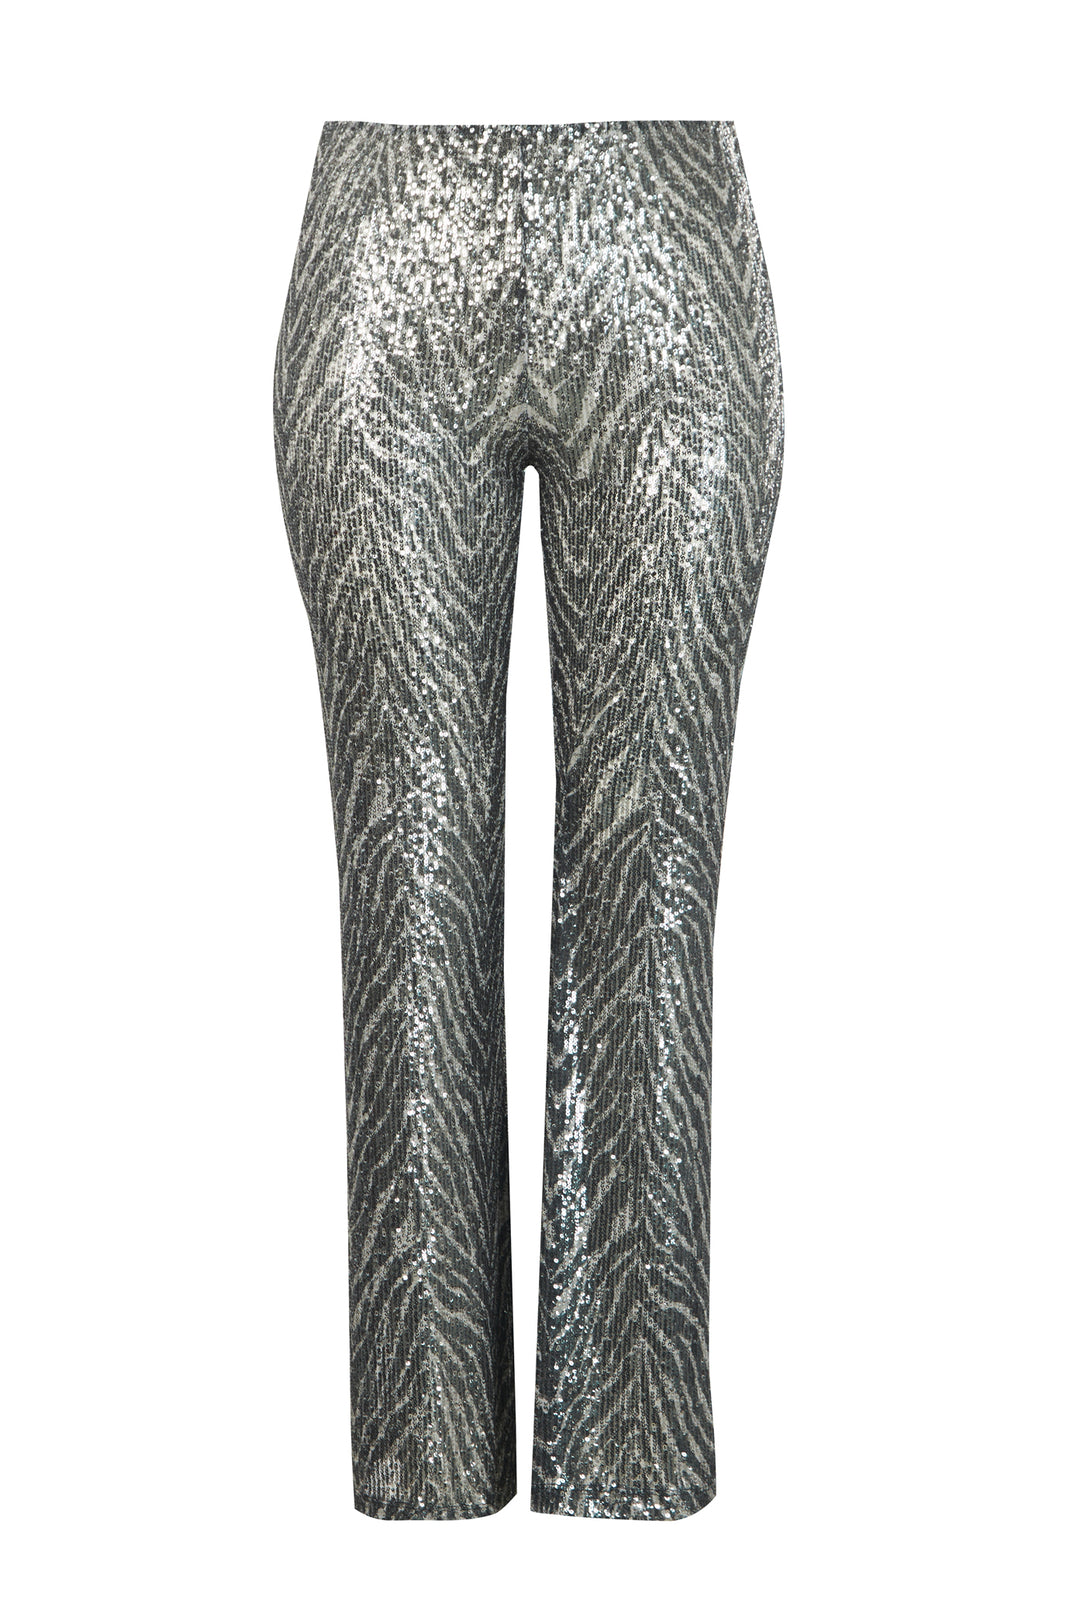 broek met pailletten - mat fashion - 8001.2076 - grote maten - dameskleding - kledingwinkel - herent - leuven